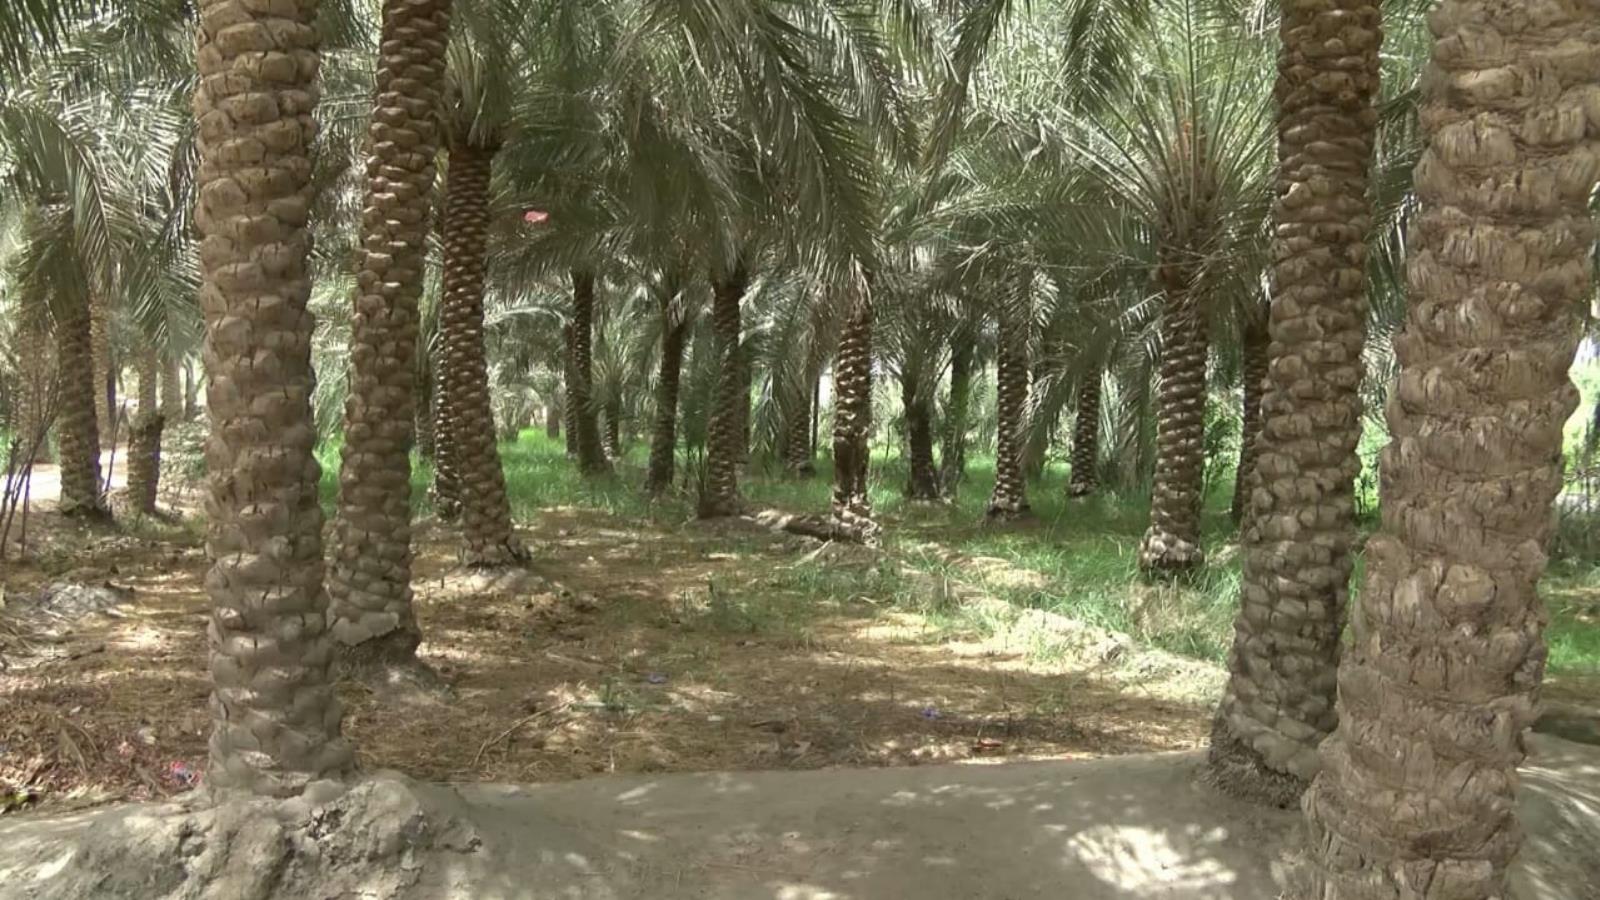 بلغ عدد أشجار النخيل في العراق 15 مليون نخلة بحسب إحصاءات 2017 (الجزيرة)